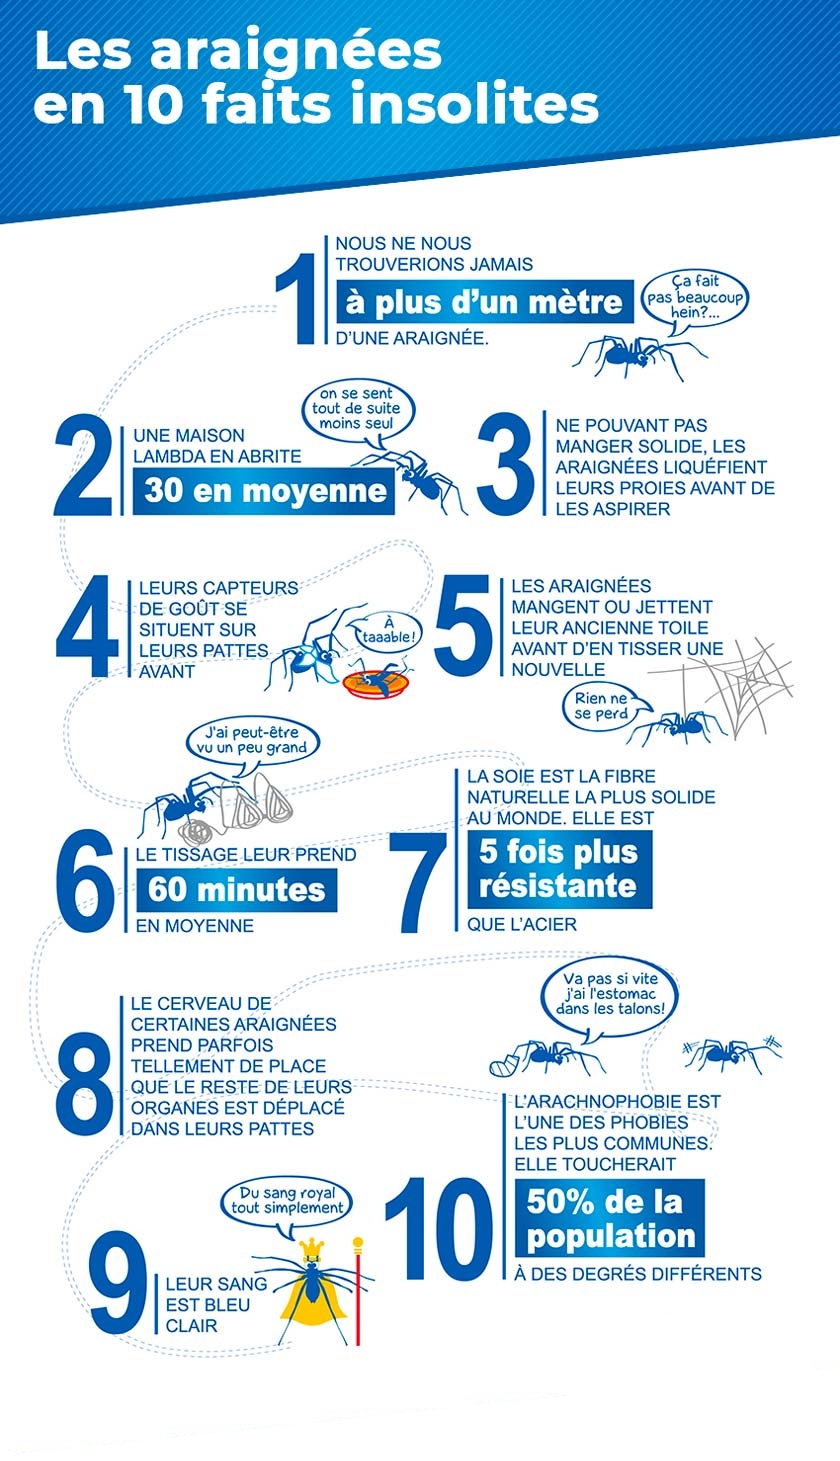 10 faits insolites sur les araignées